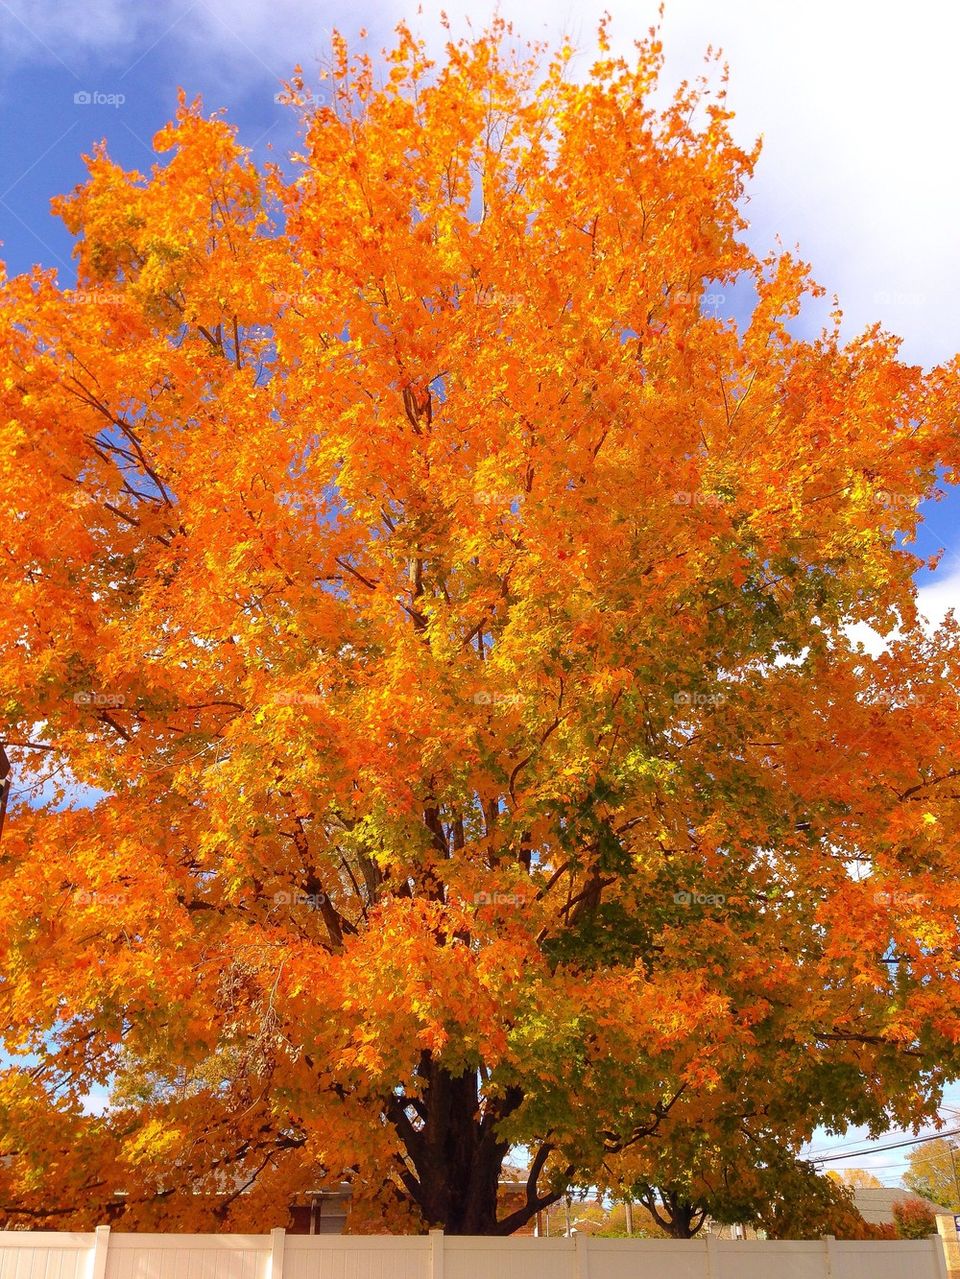 Bright orange Autumn tree